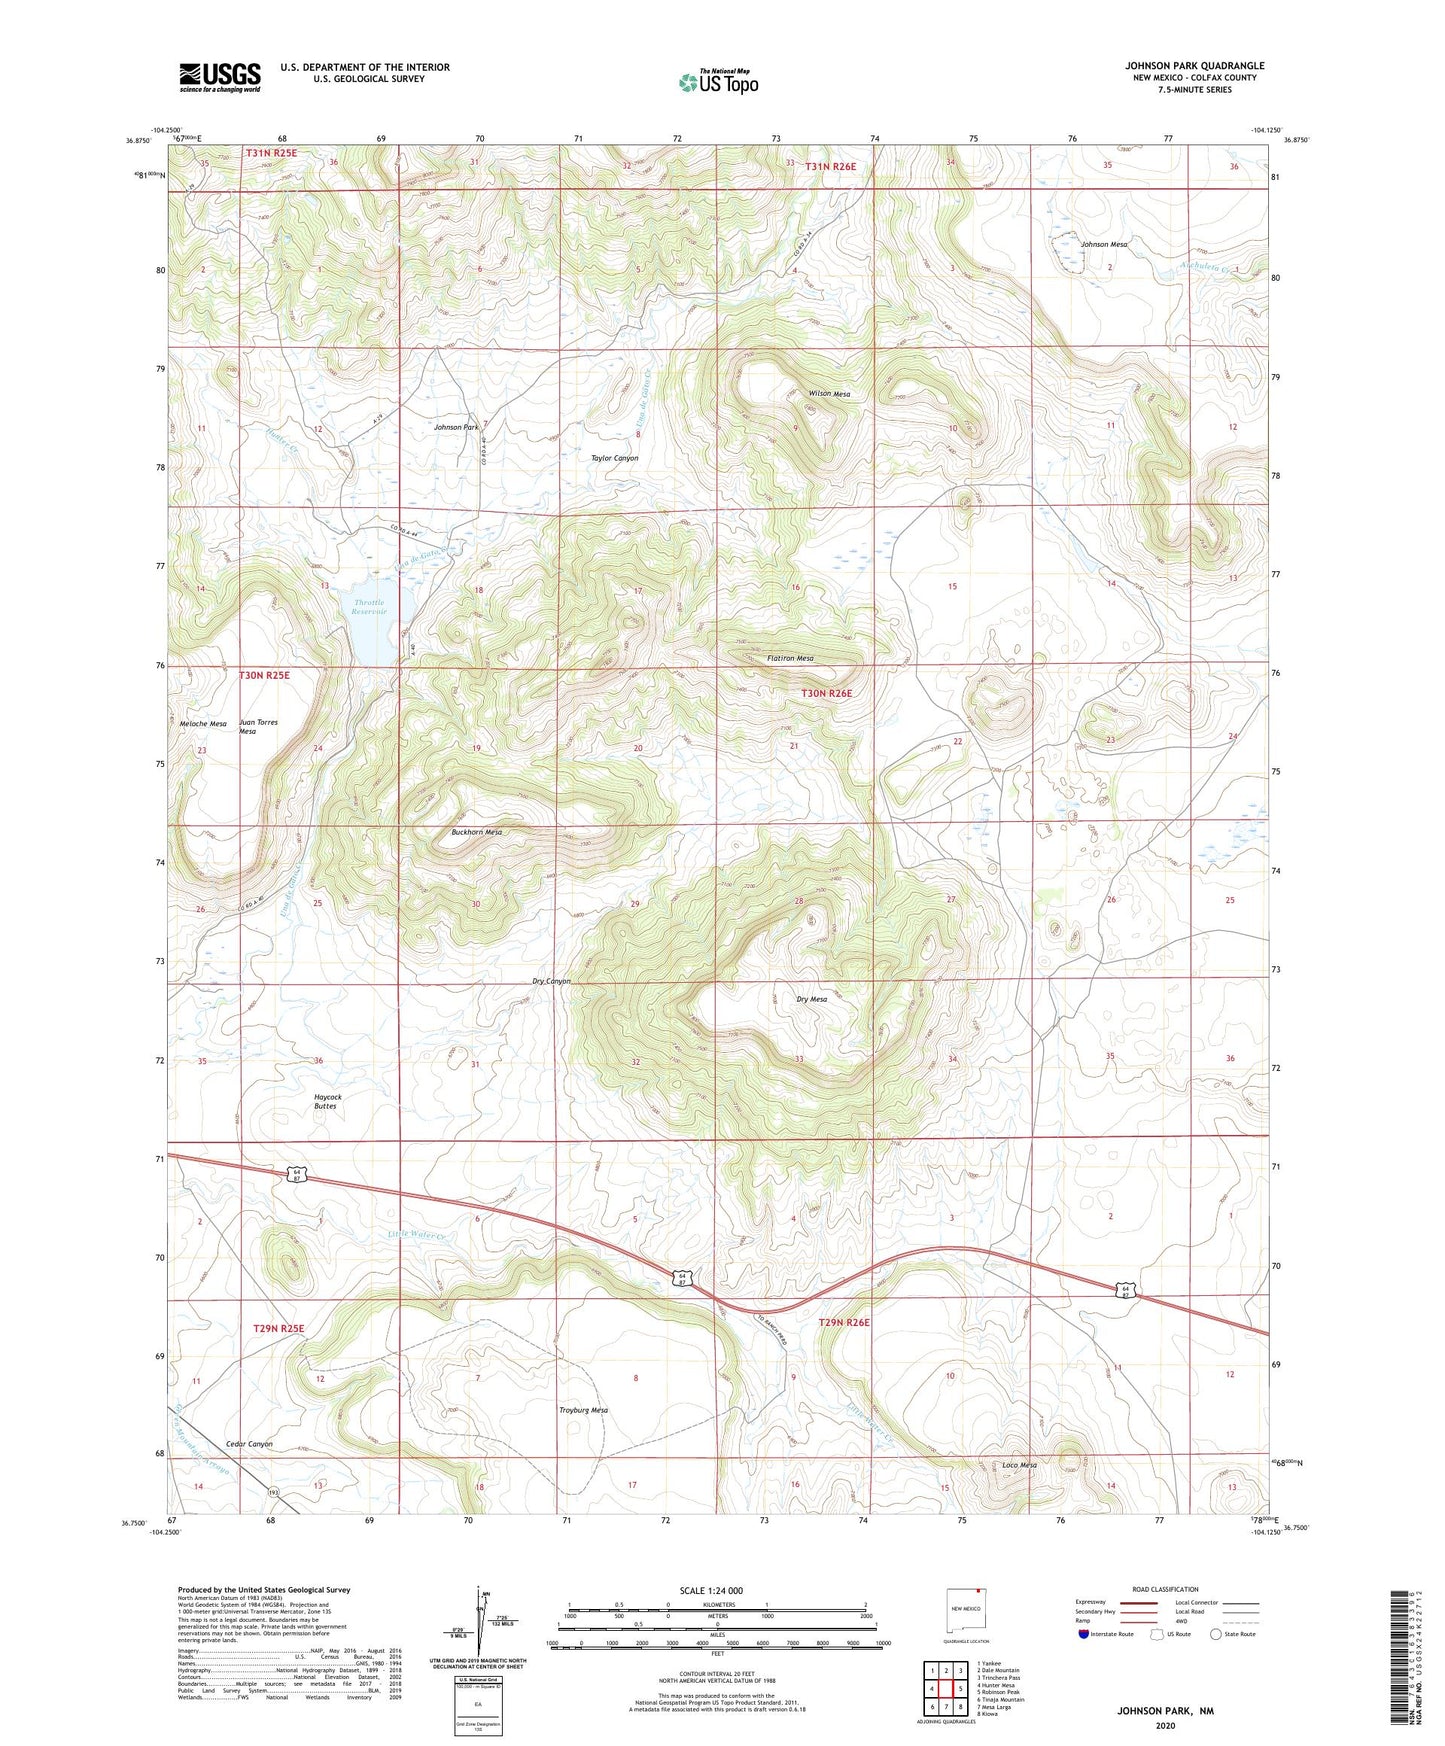 Johnson Park New Mexico US Topo Map Image